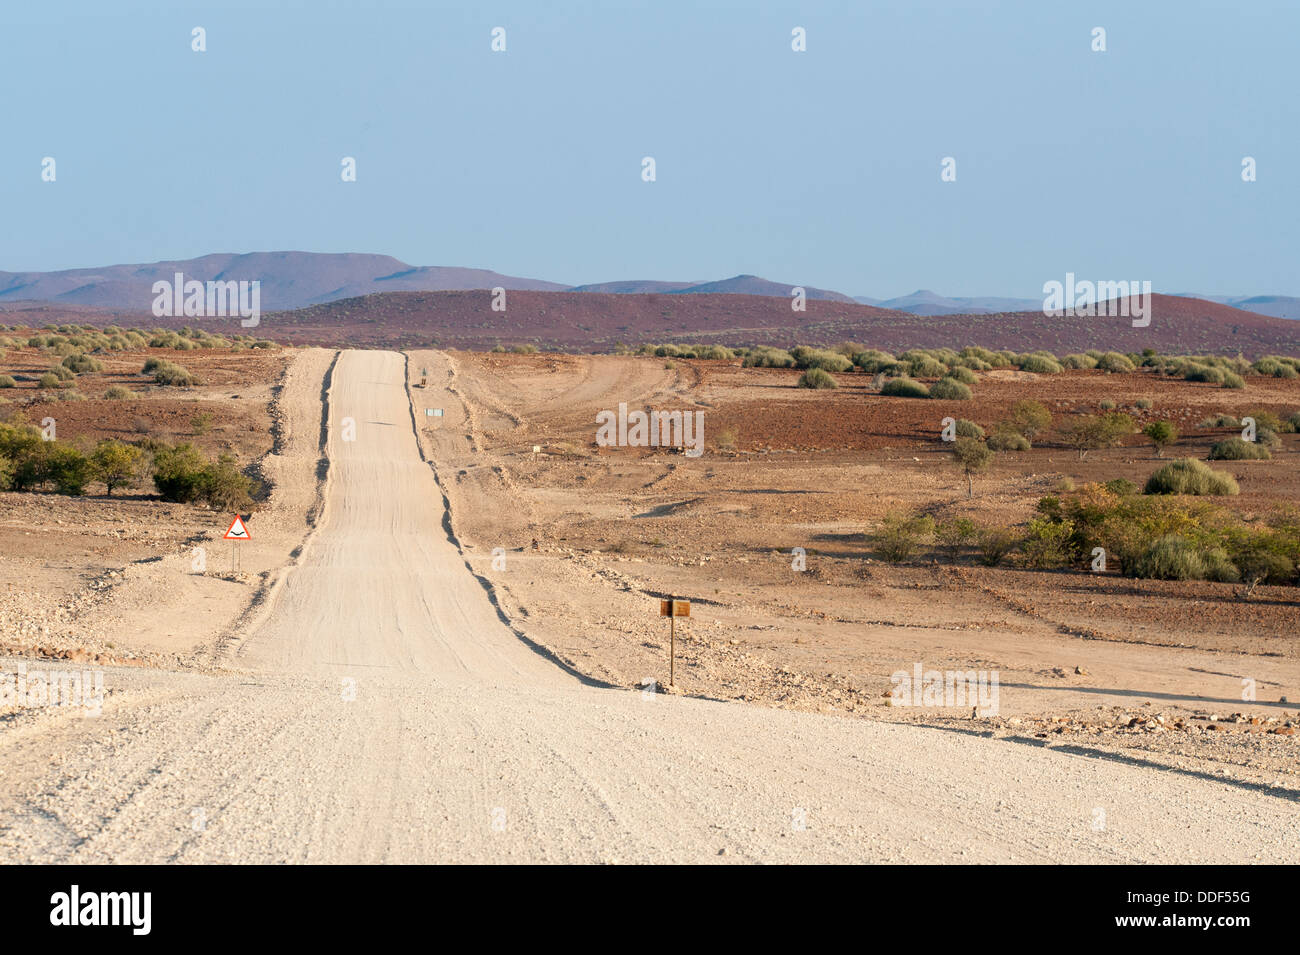 Wide, straight gravel road in dry landscape, Kunene Region, Namibia Stock Photo